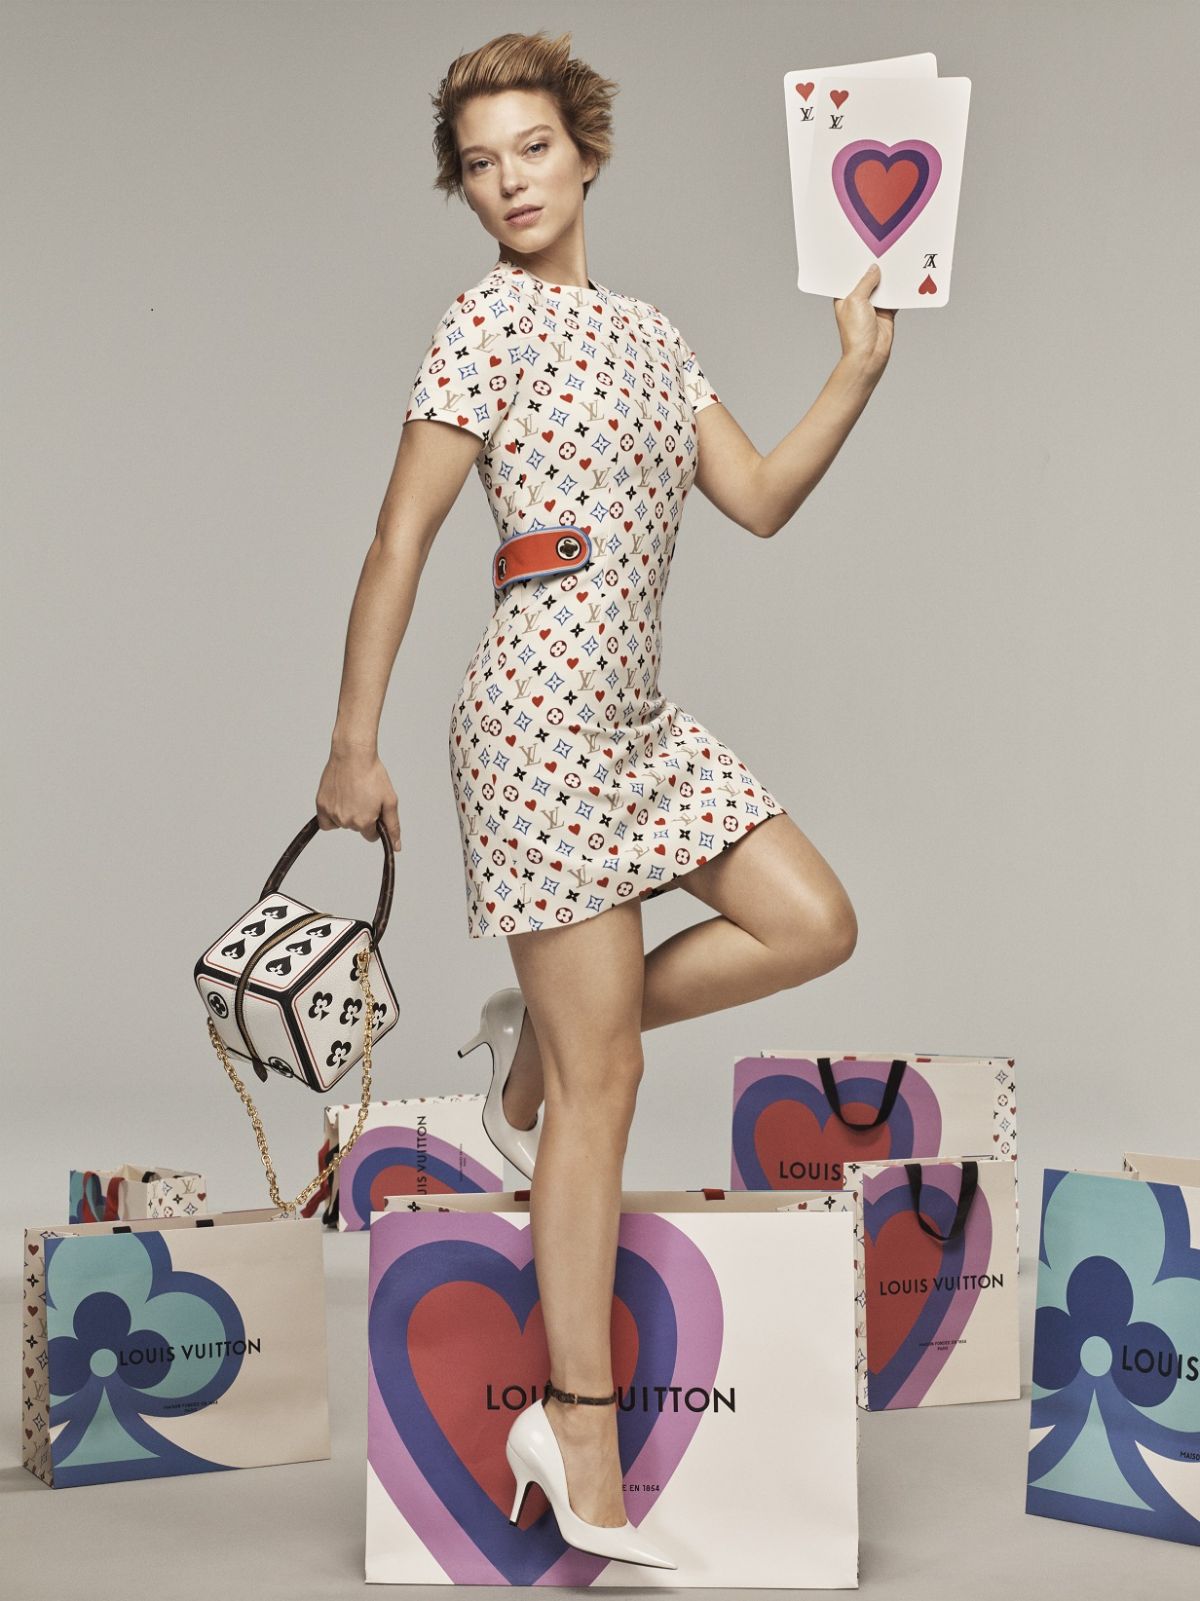 Lea Seydoux Actress - Celebrity Endorsements, Celebrity Advertisements,  Celebrity Endorsed Products